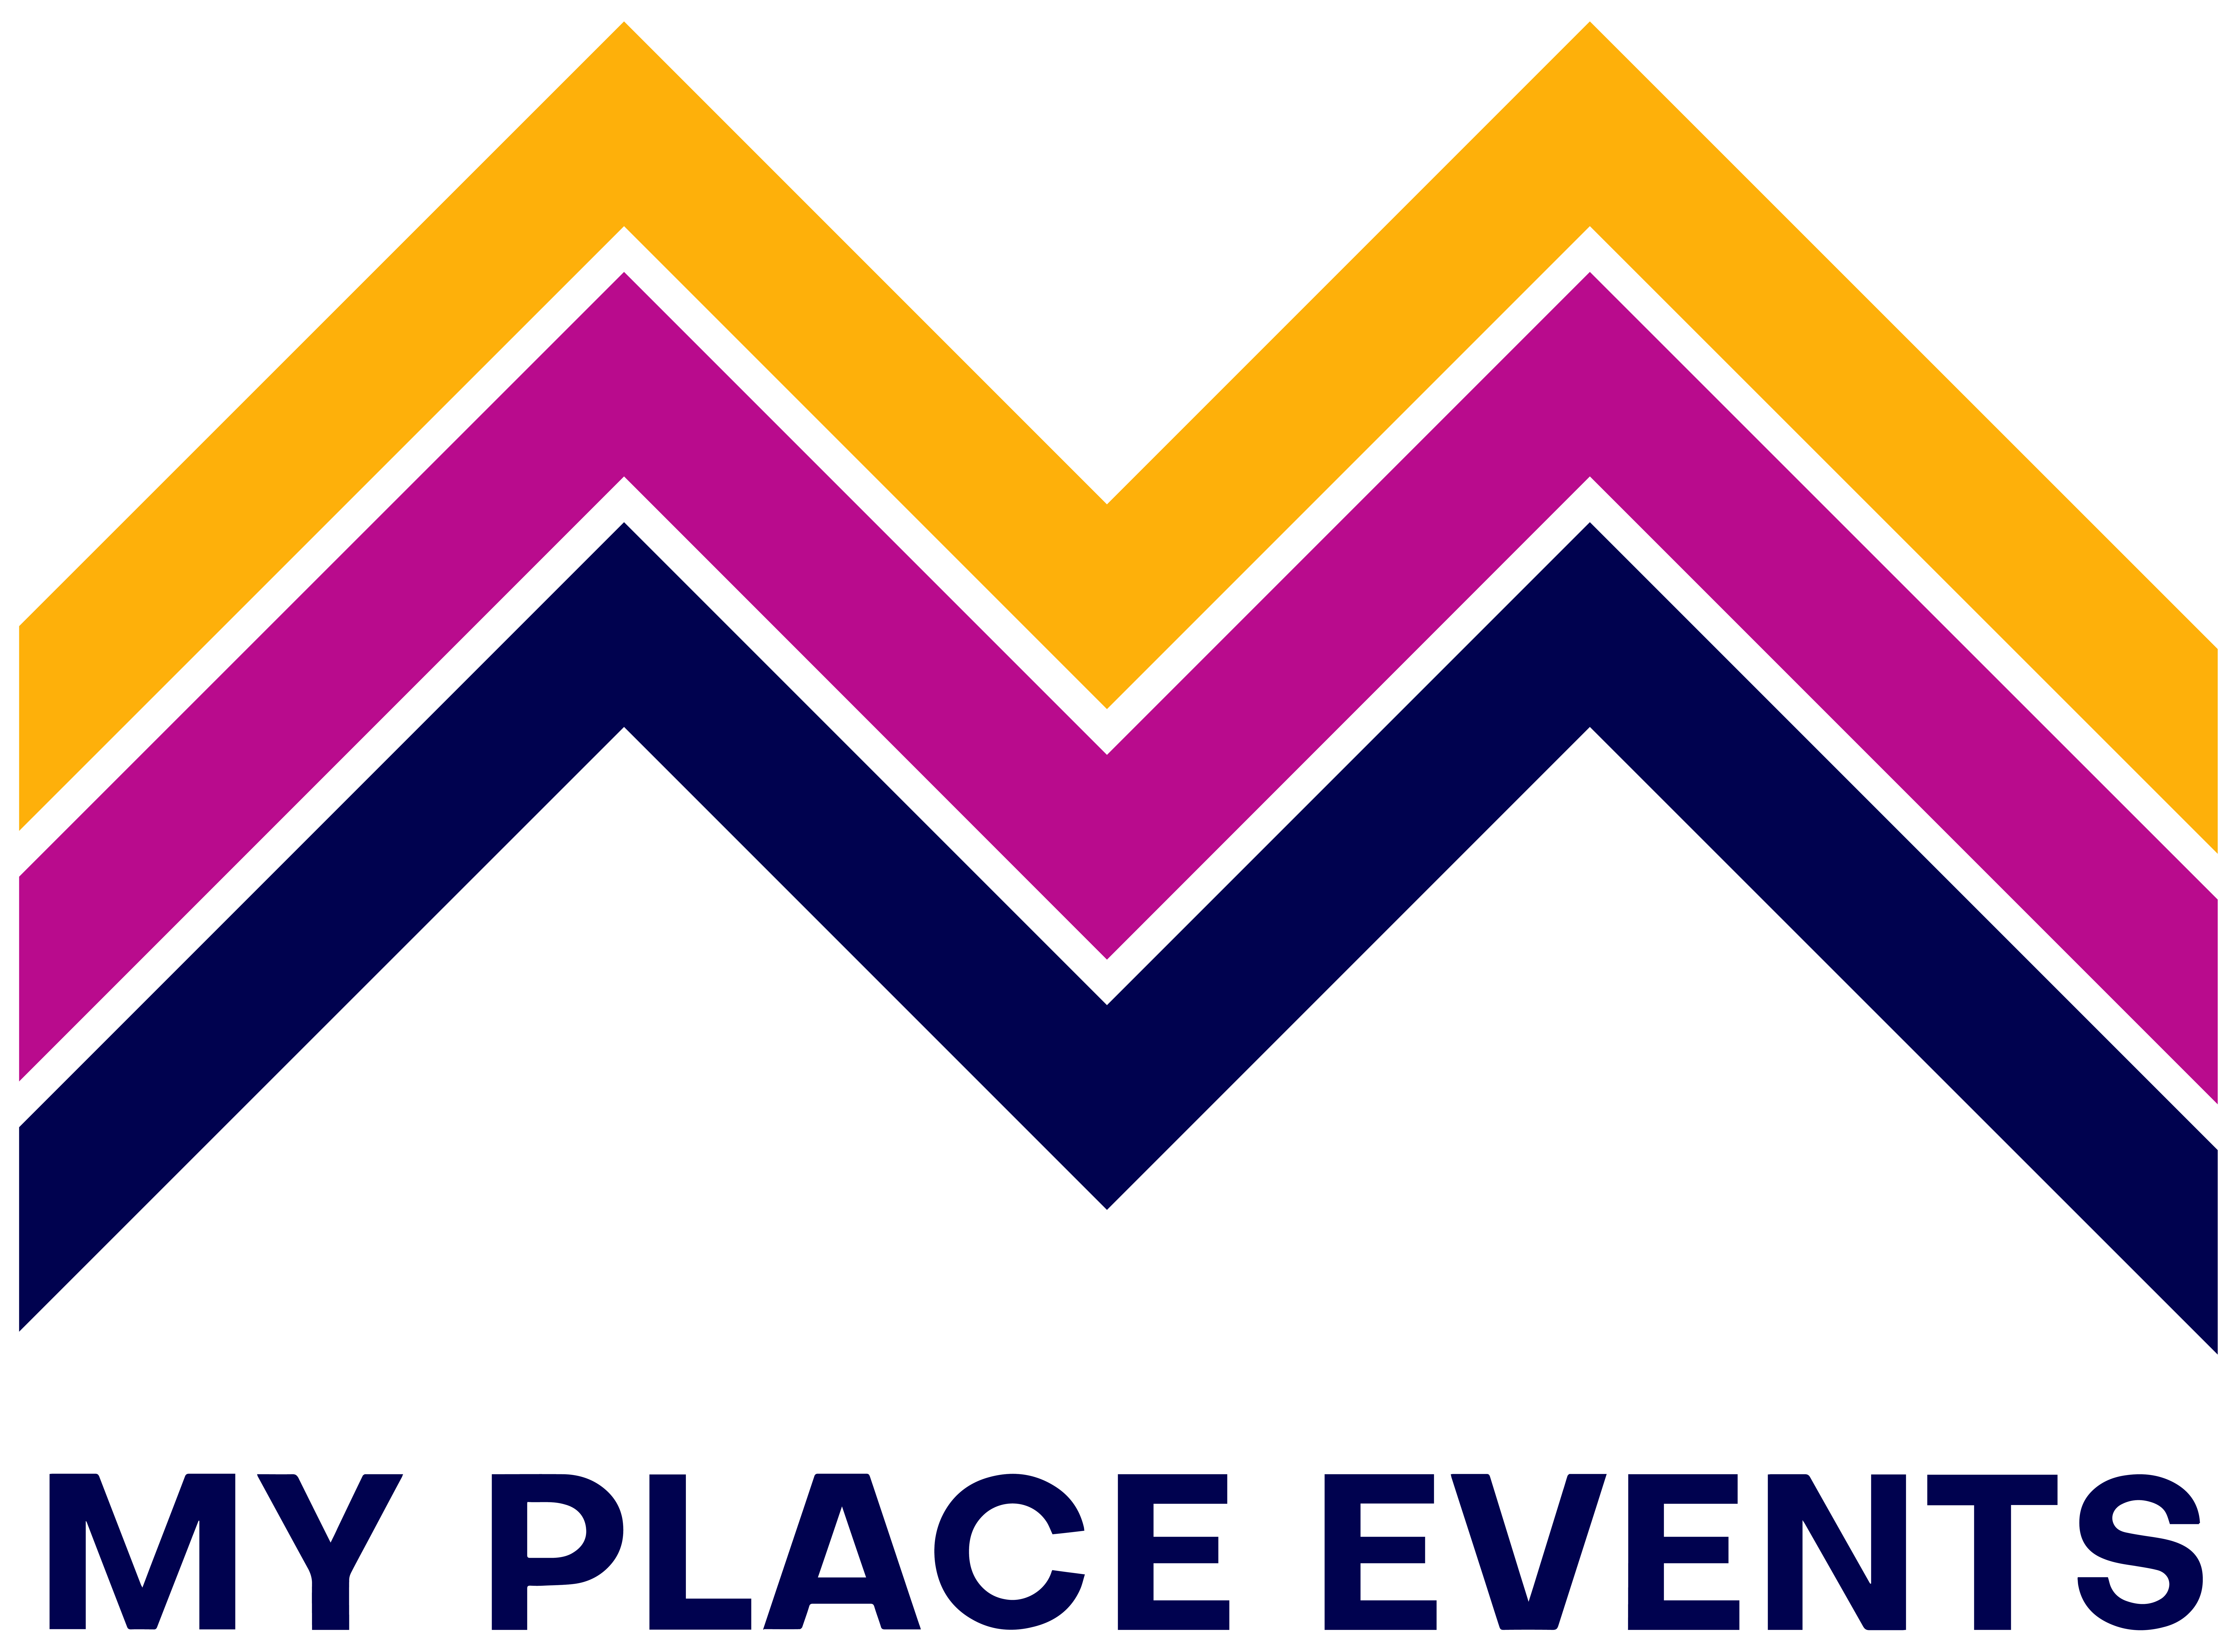 My Place Events - Votre billetterie événementielle 100% numérique